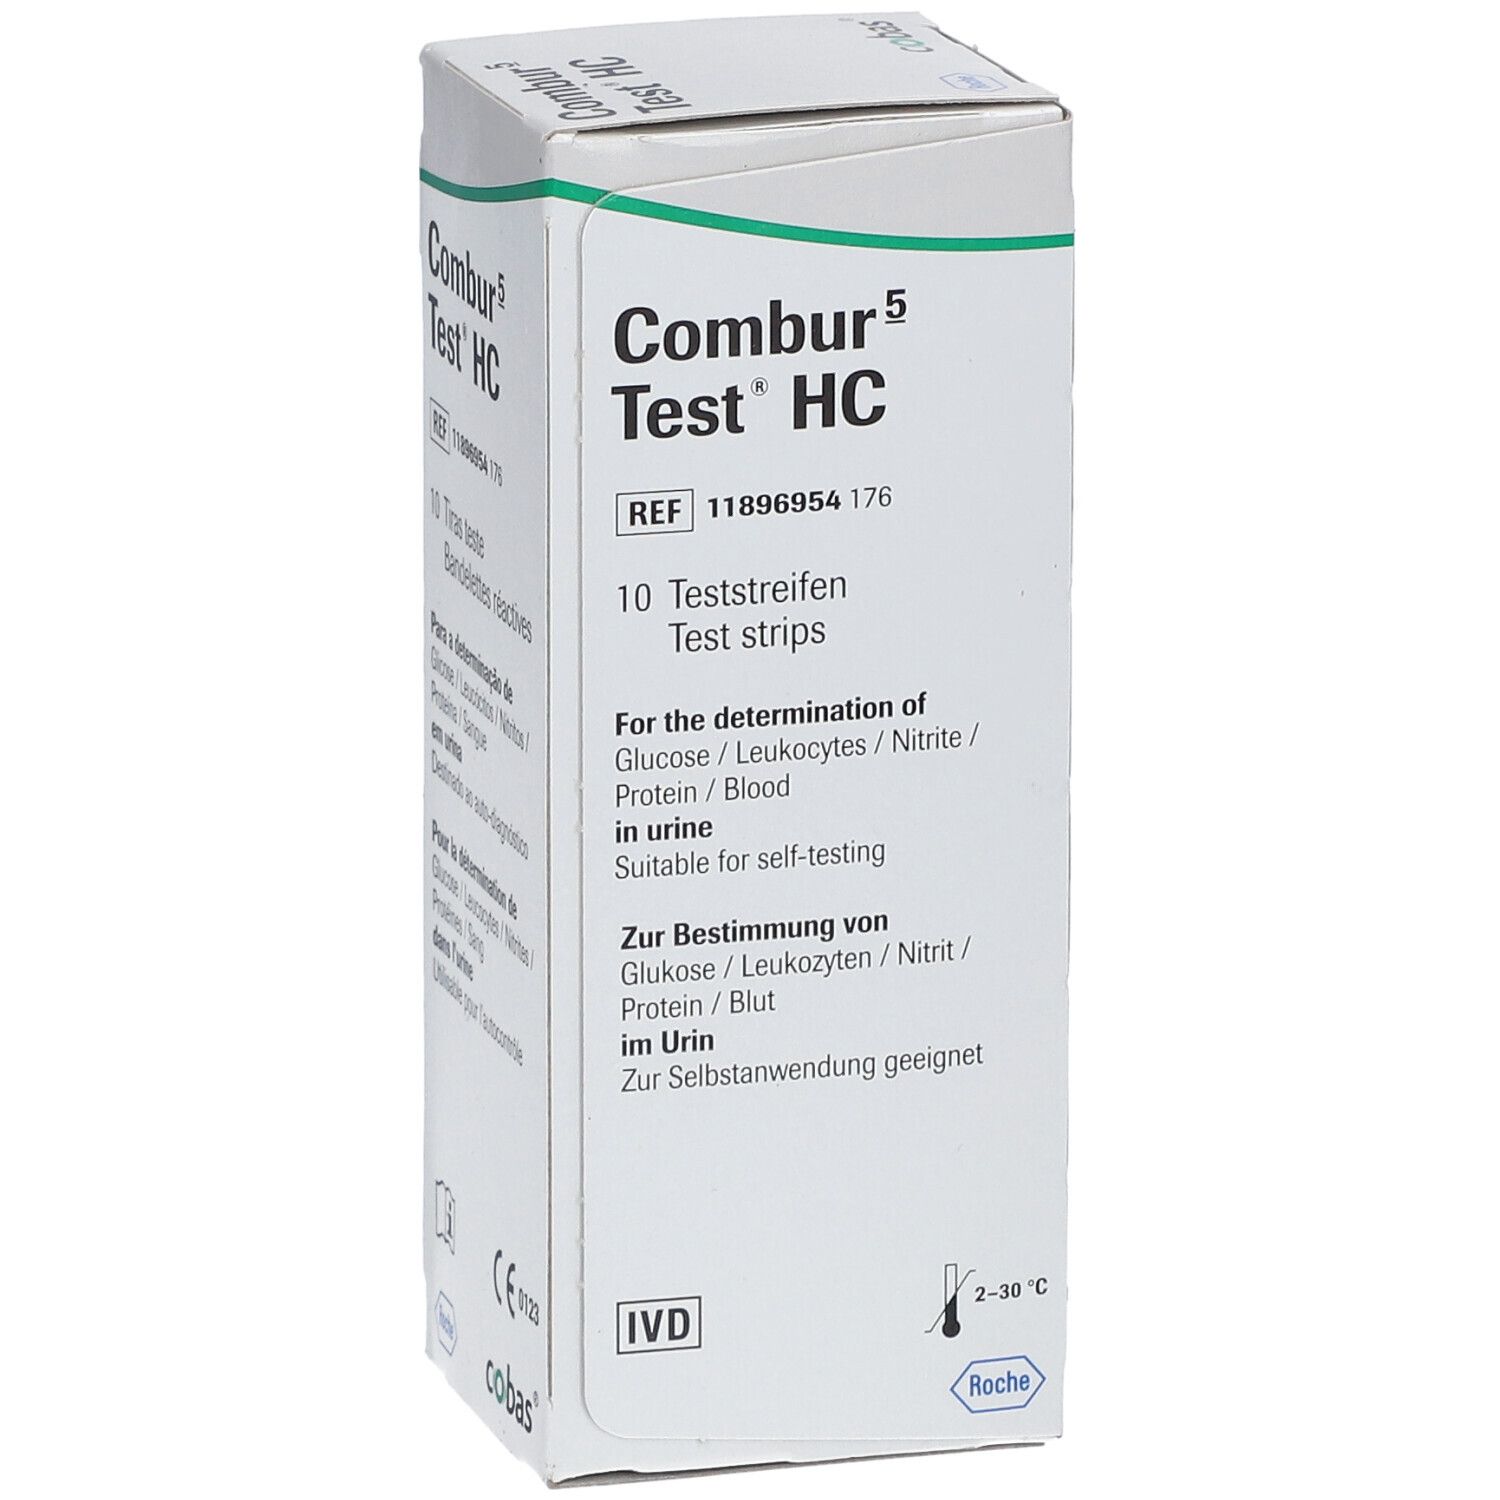 Combur 5 Test® HC Teststreifen